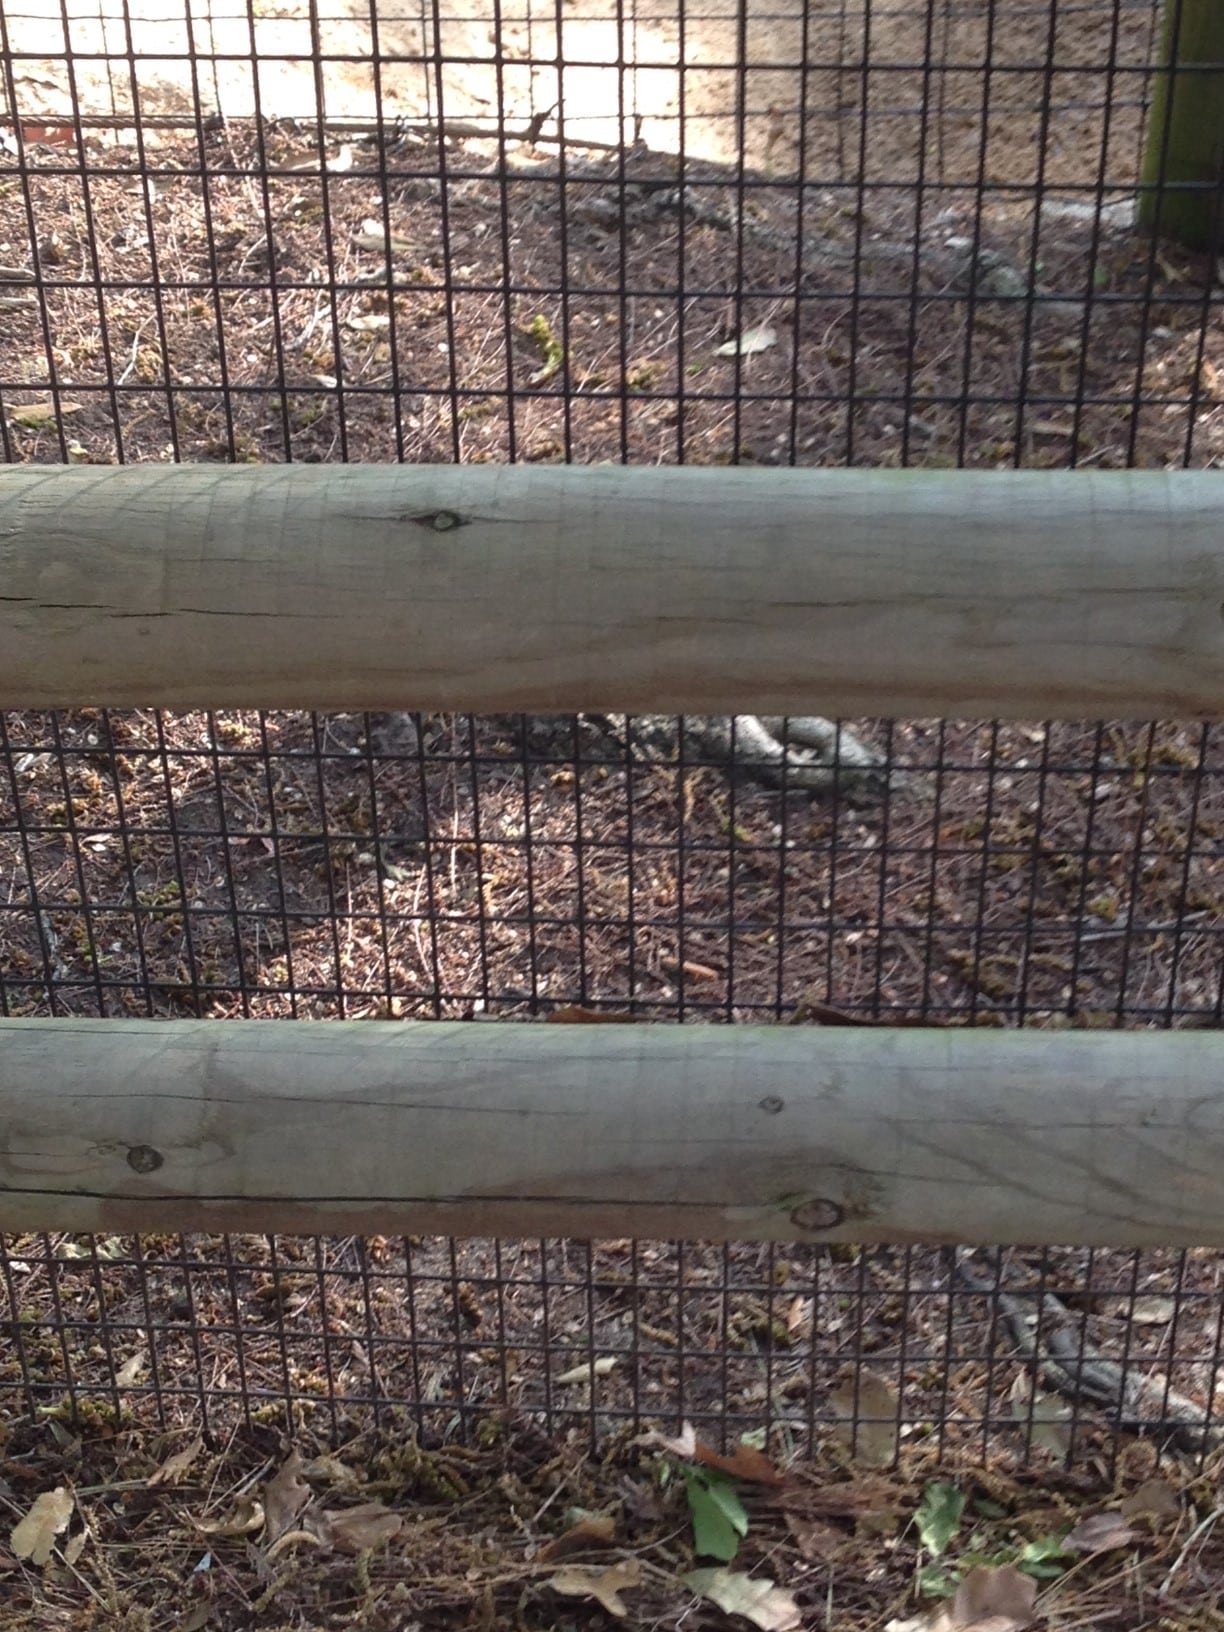 houston zoo mesh fencing